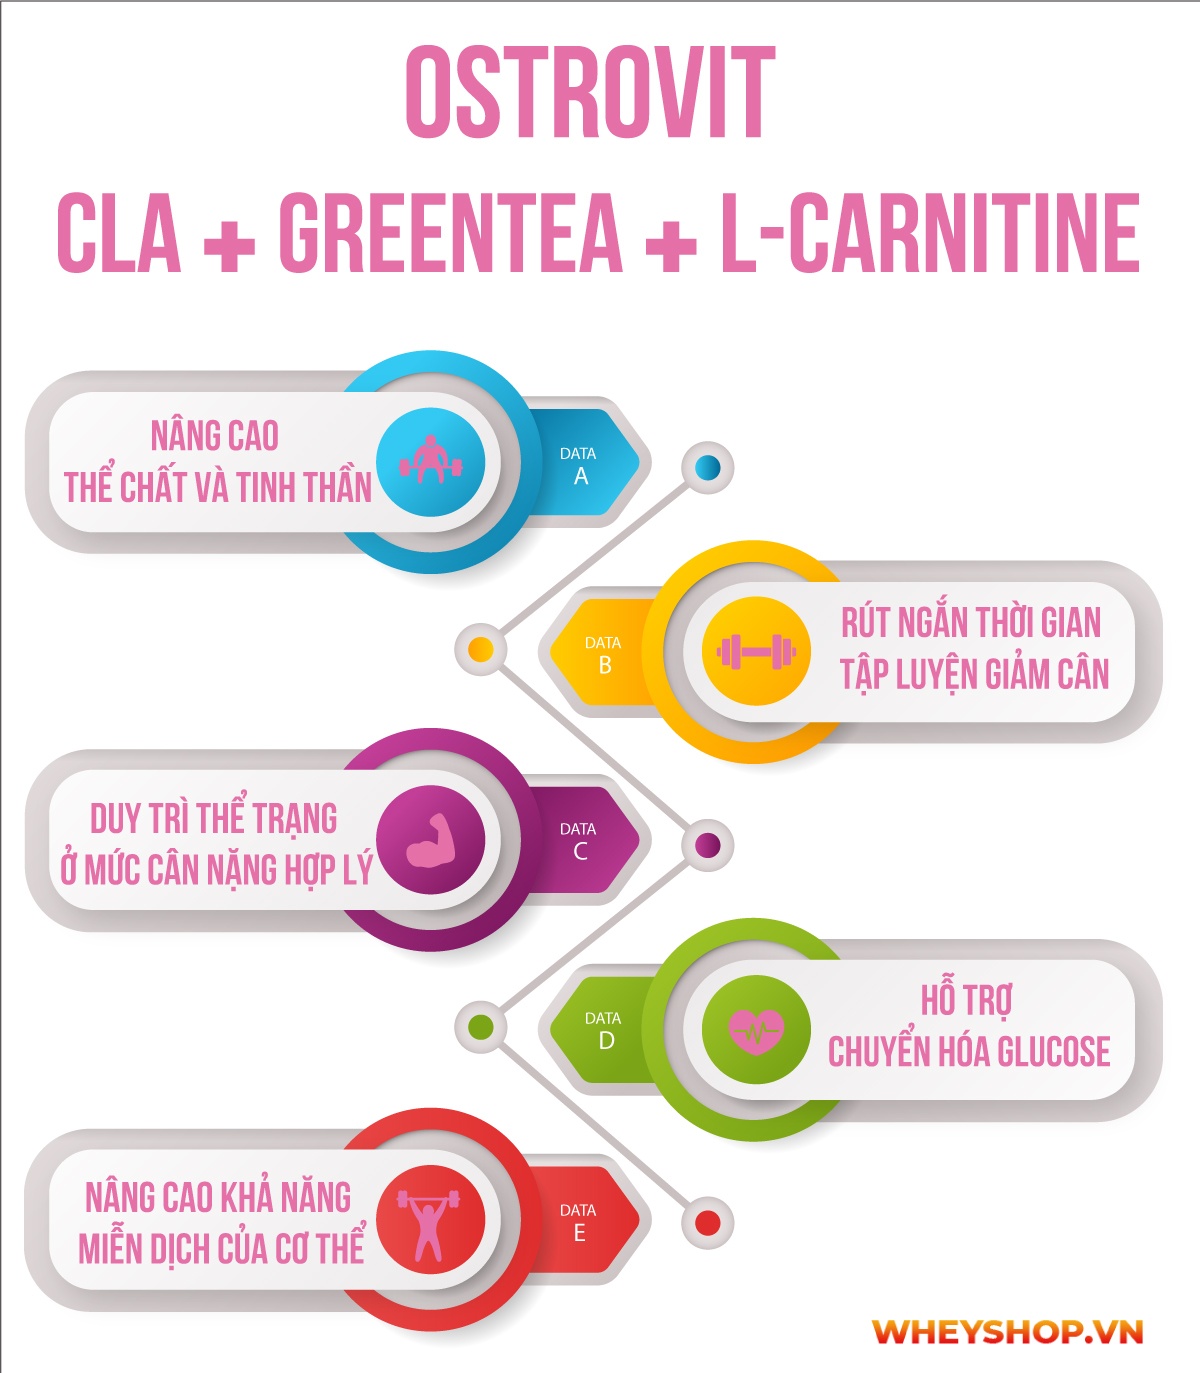 Ostrovit CLA + Greentea + L-Carnitine là sản phẩm hỗ trợ giảm cân chuyển hóa mỡ thừa với sự kết hợp 3 trong 1, tăng cường trao đổi chất, giảm mỡ nhanh, hiệu quả 